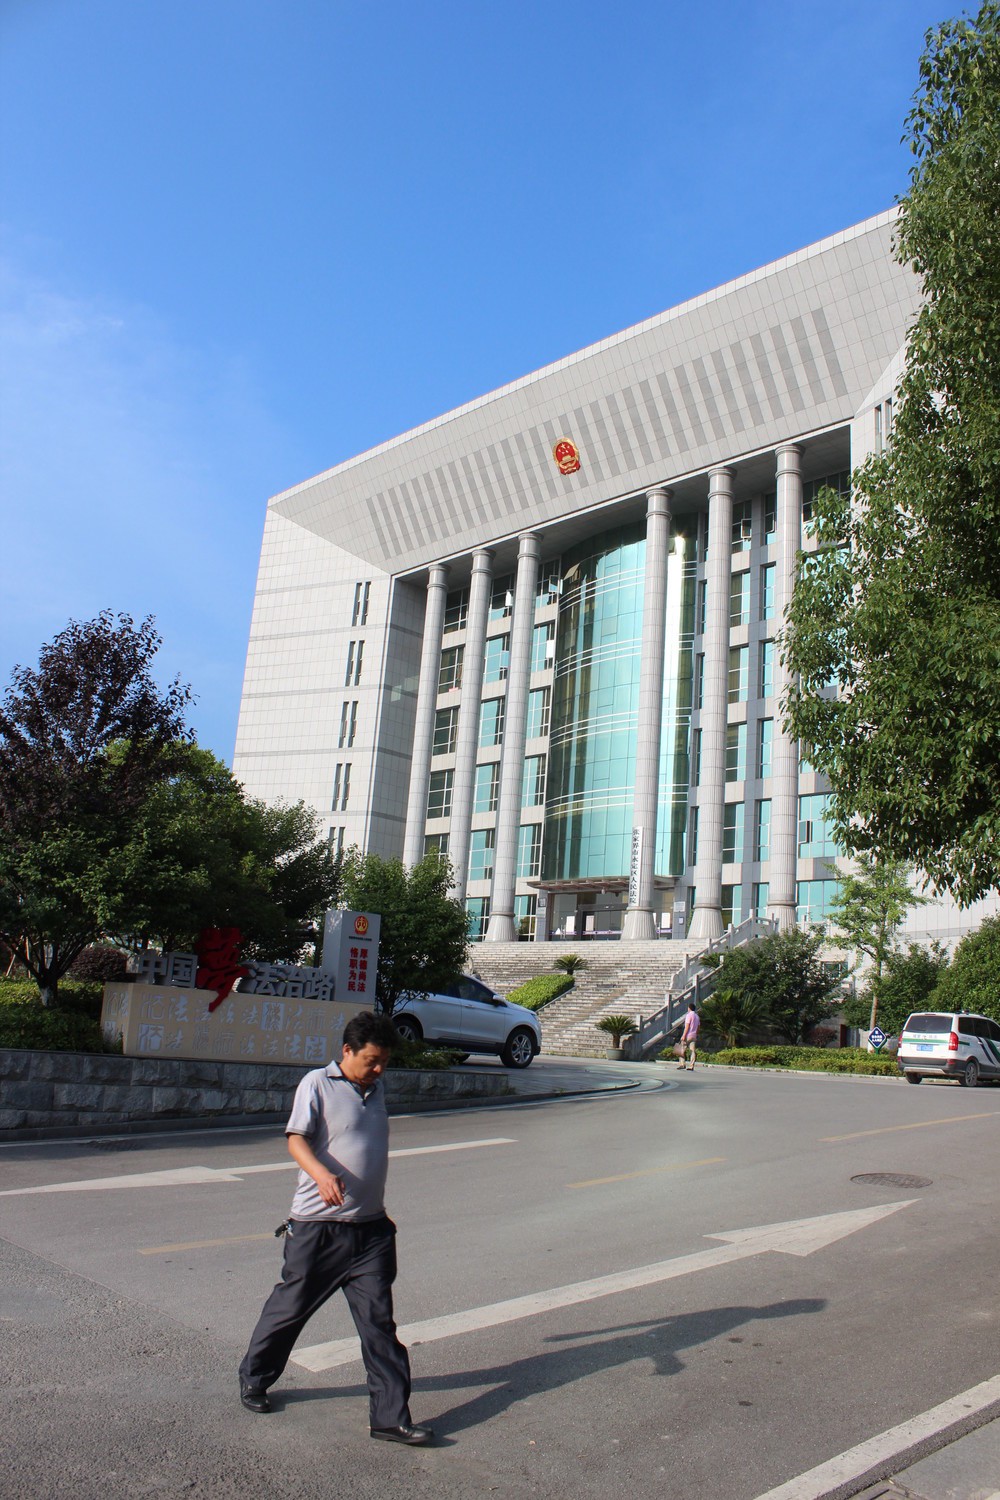 湖南省張家界市の地方裁判所の建物。地方にも巨大な庁舎が多くある